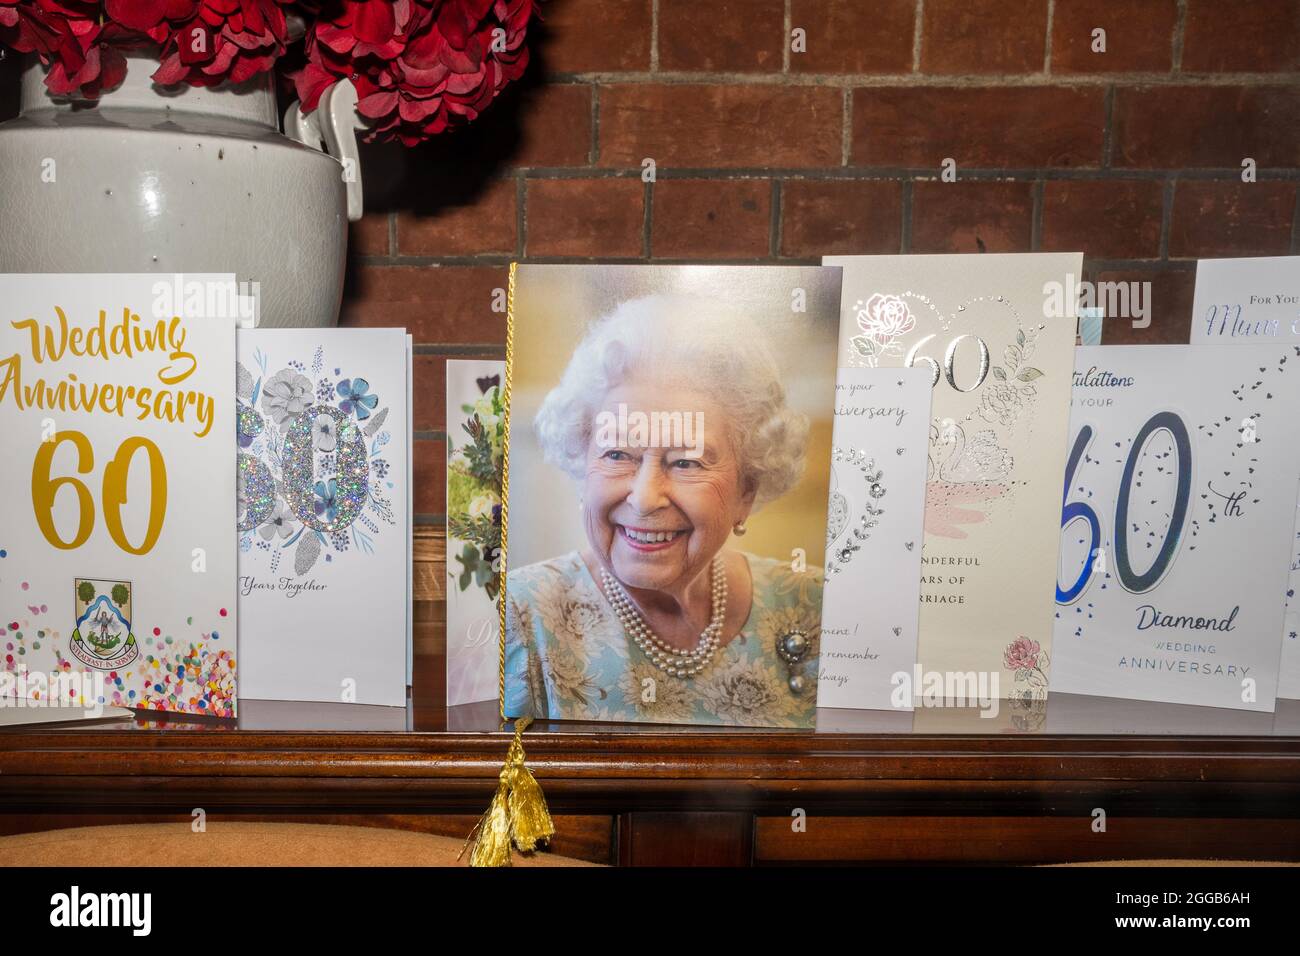 Exhibición de 60th o tarjetas de aniversario de bodas Diamond incluyendo una tarjeta de la Reina, Reino Unido Foto de stock